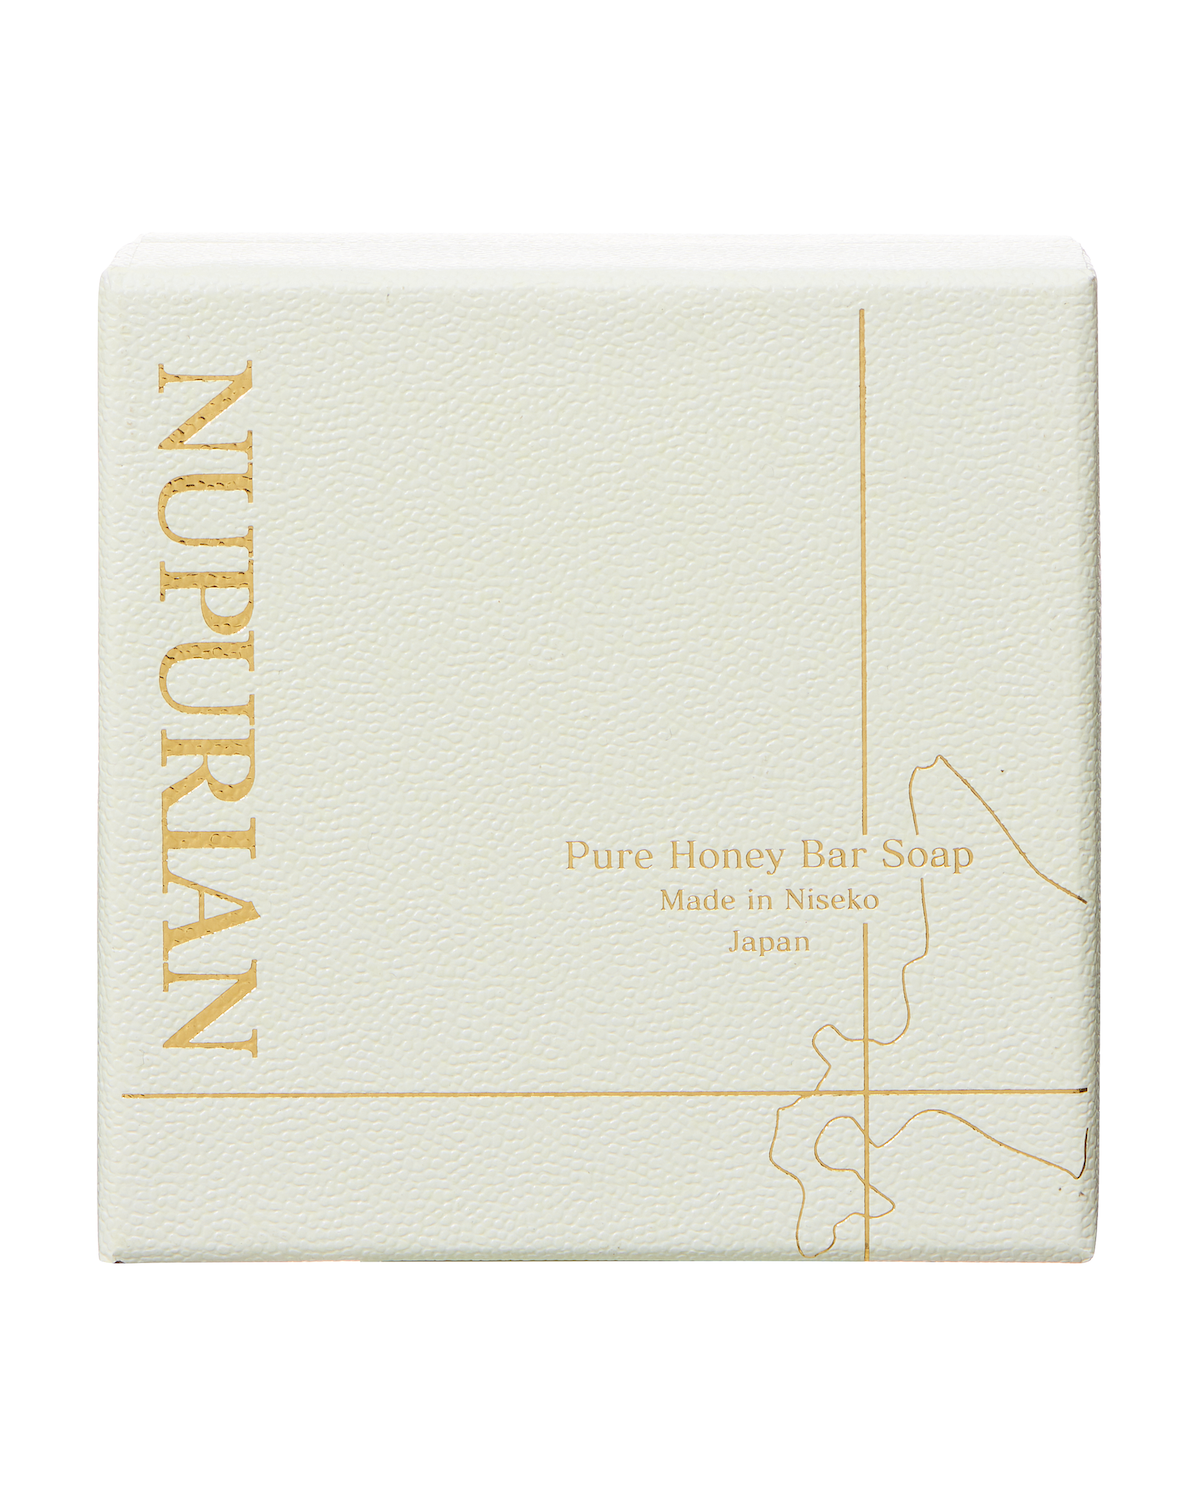 NUPURIAN Pure Honey Bar Soap